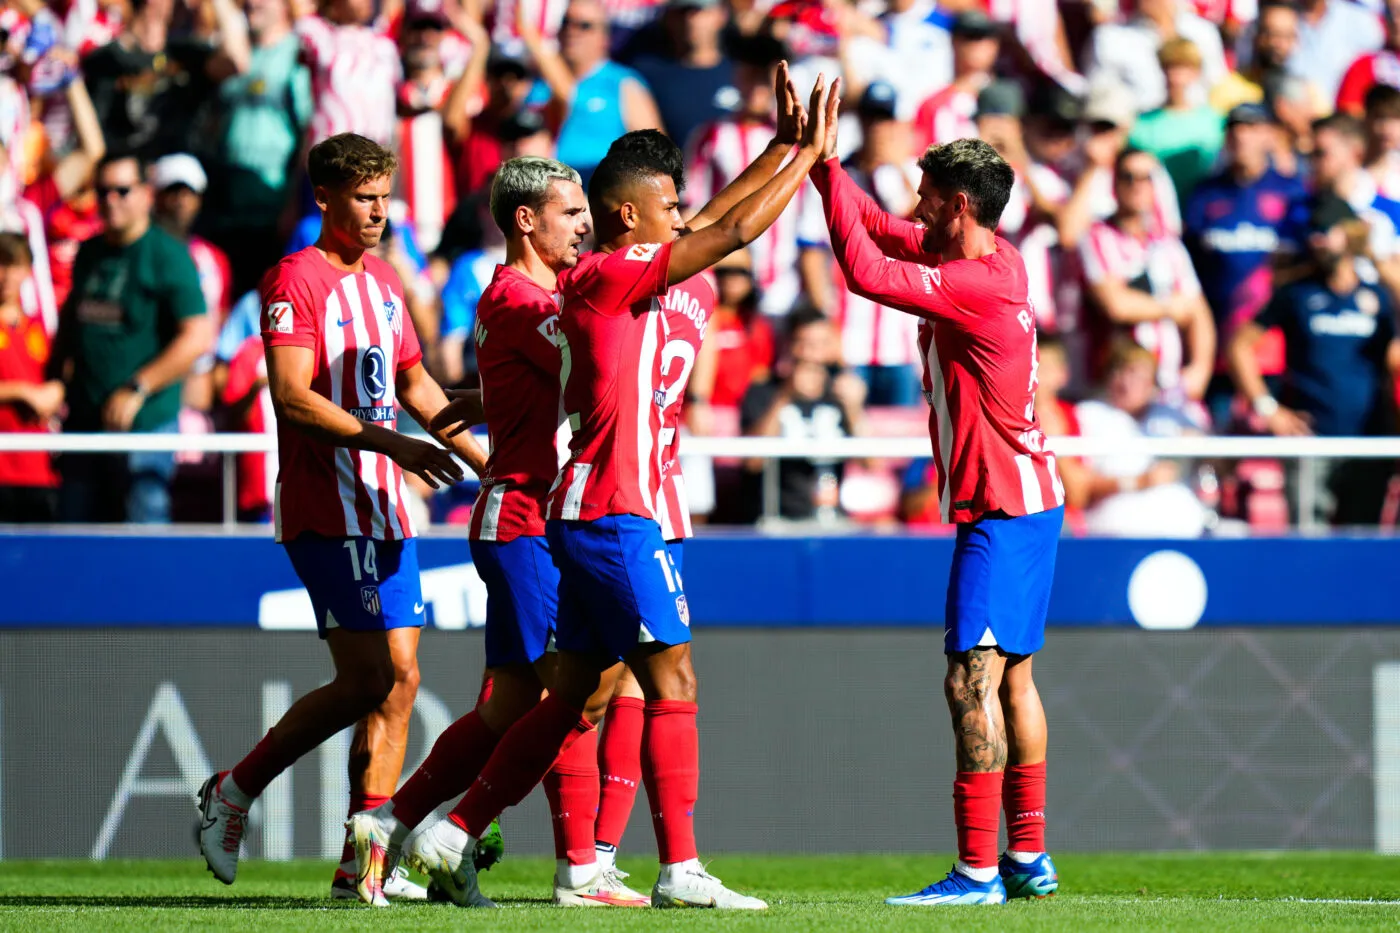 L'Atlético s'offre la victoire face au Celta Vigo grâce à un triplé d'Antoine Griezmann